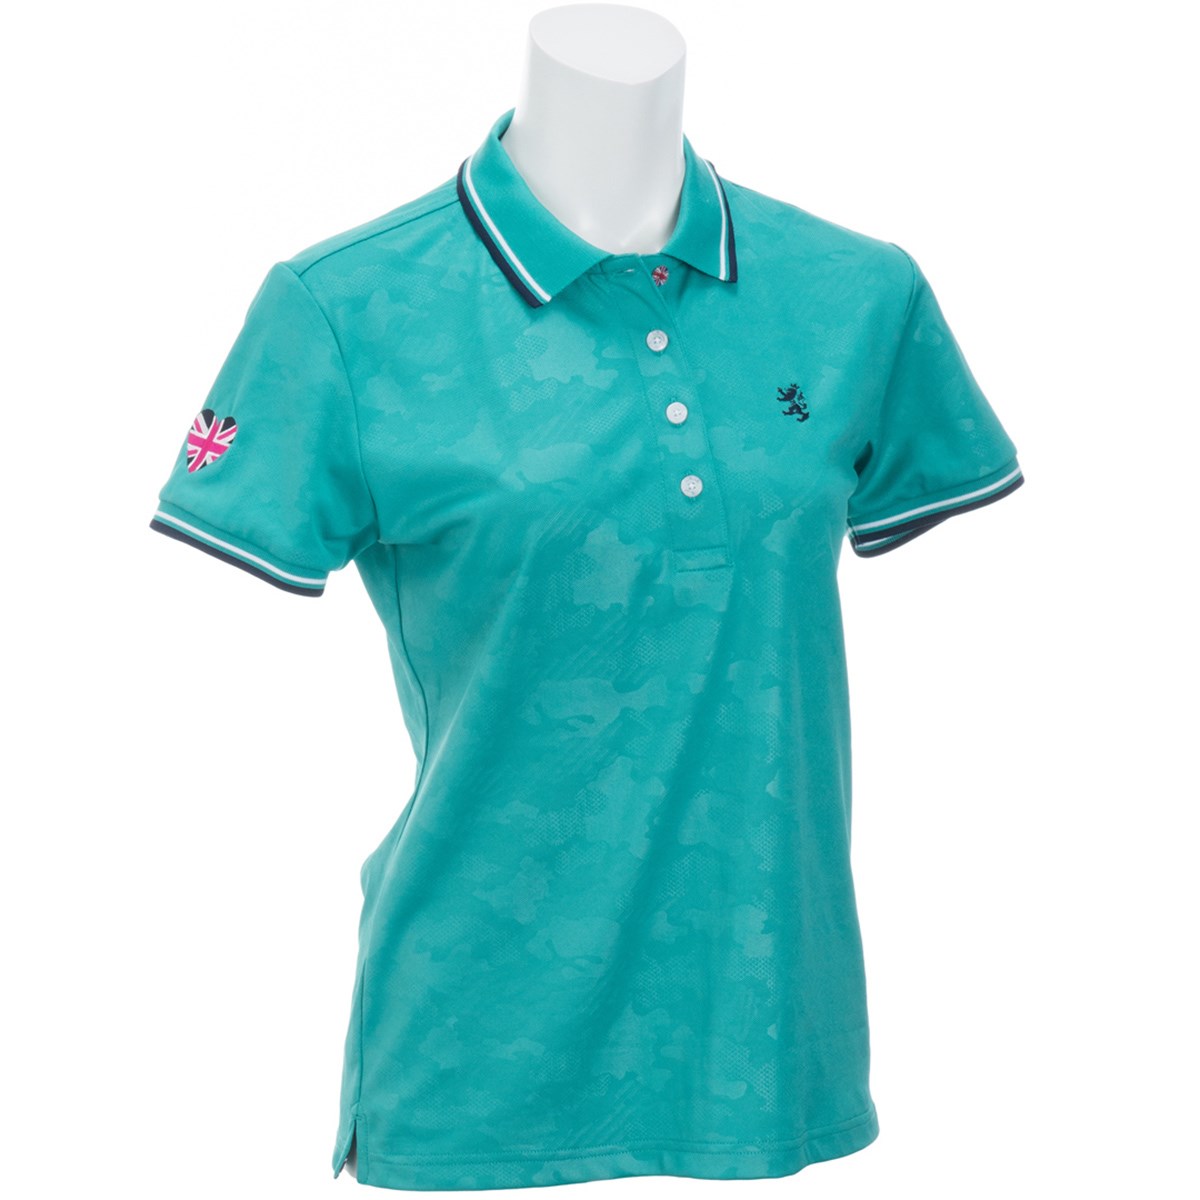  [アウトレット] [在庫限りのお買い得商品] アドミラル カモフラージュ エンボス 半袖ポロシャツ ゴルフウェア